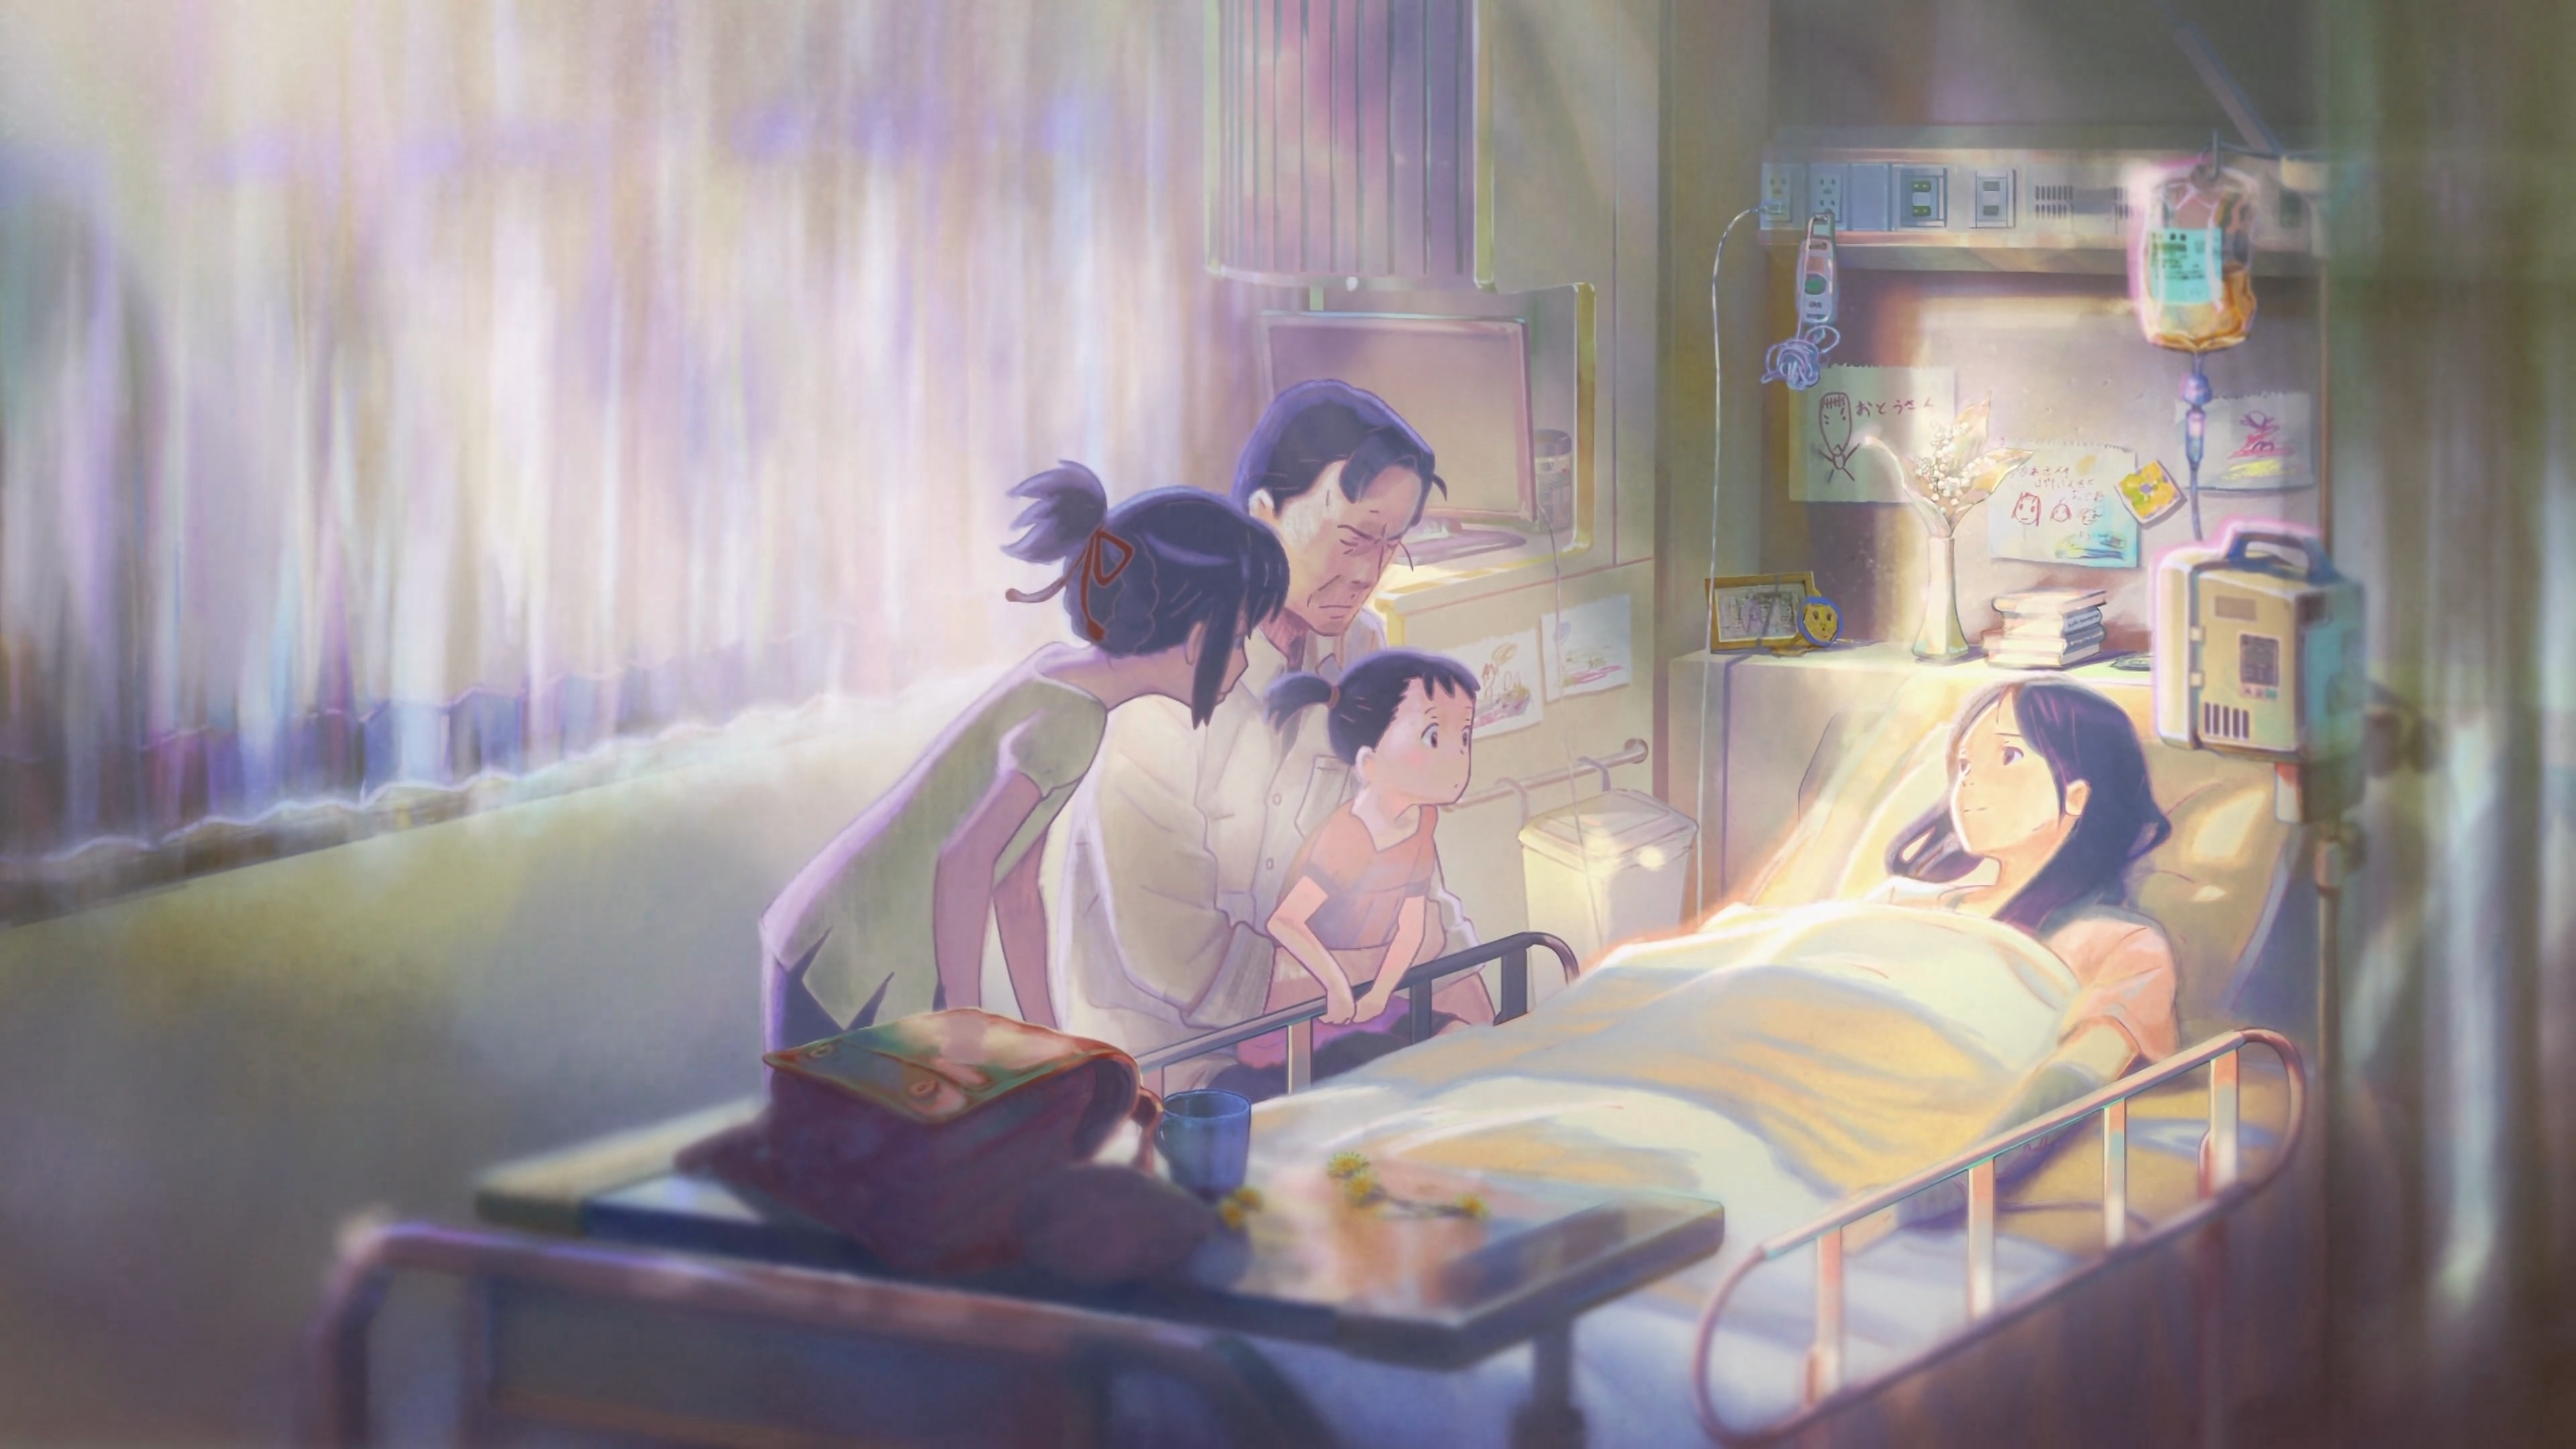 Anime hospital room - 76 photo